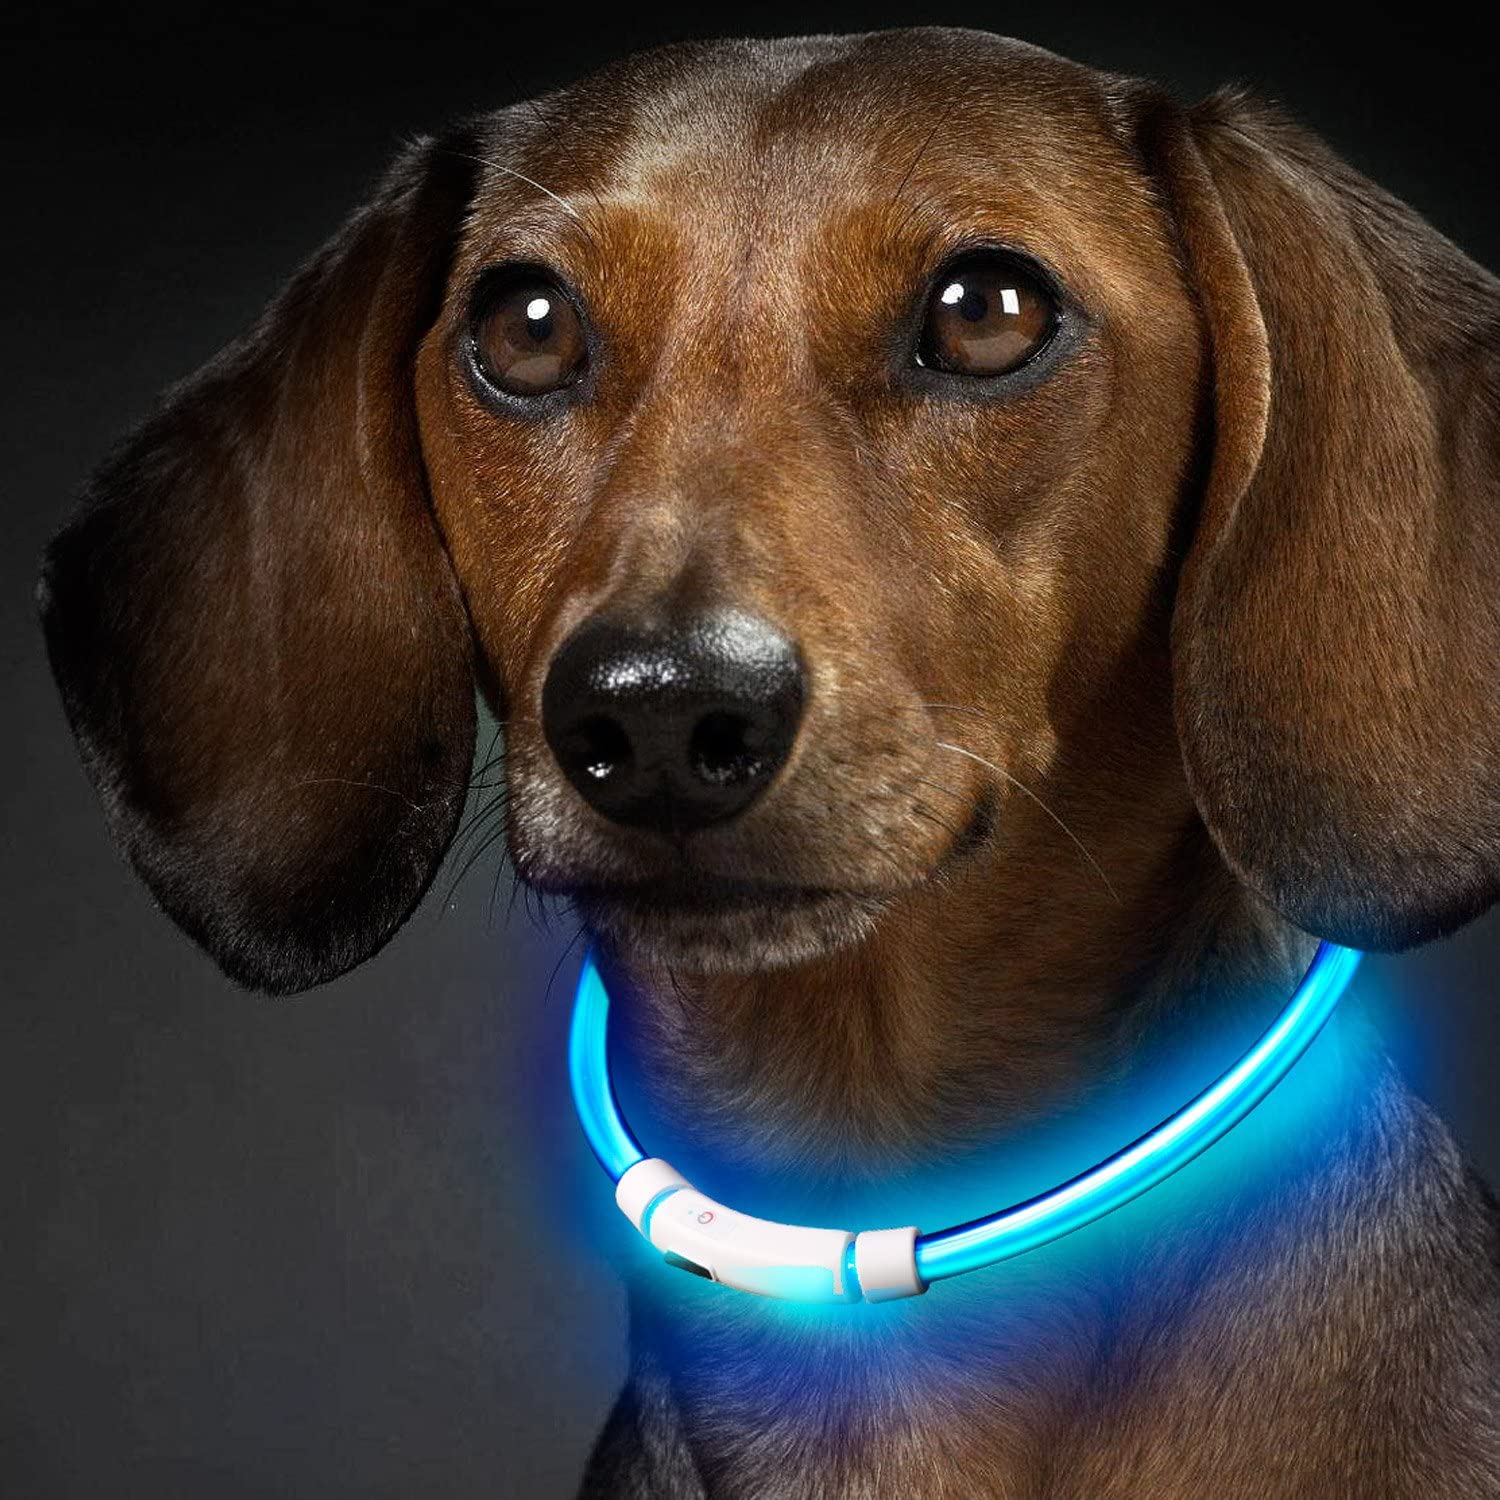  Collar para Perros, Collar de Seguridad para Perros, Rymall collar adiestramiento USB ajustable recargable impermeable LED parpadea luz Collar del animal doméstico, azul 